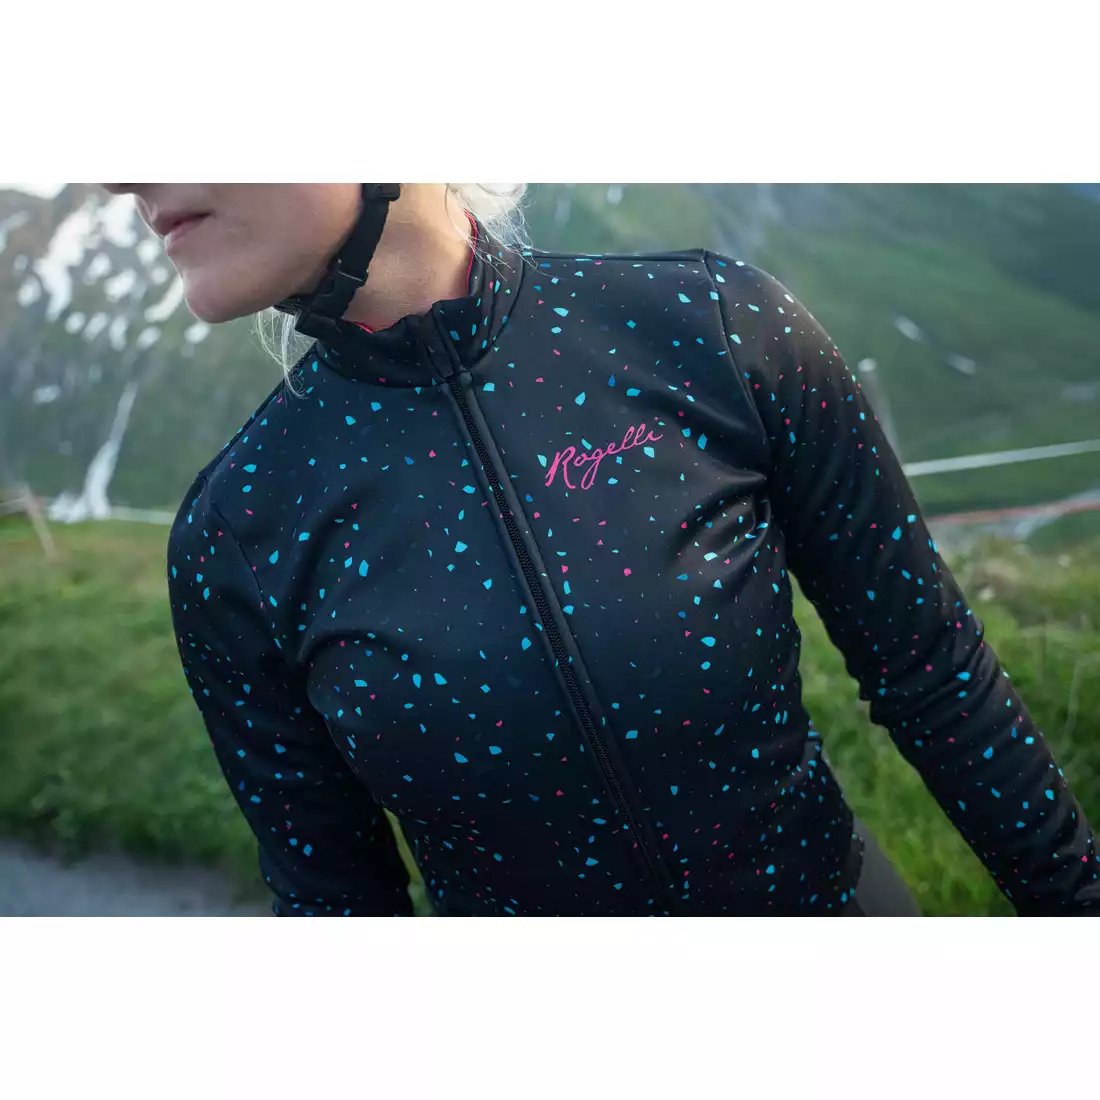 ROGELLI TERRAZZO women's winter cycling jacket, navy blue